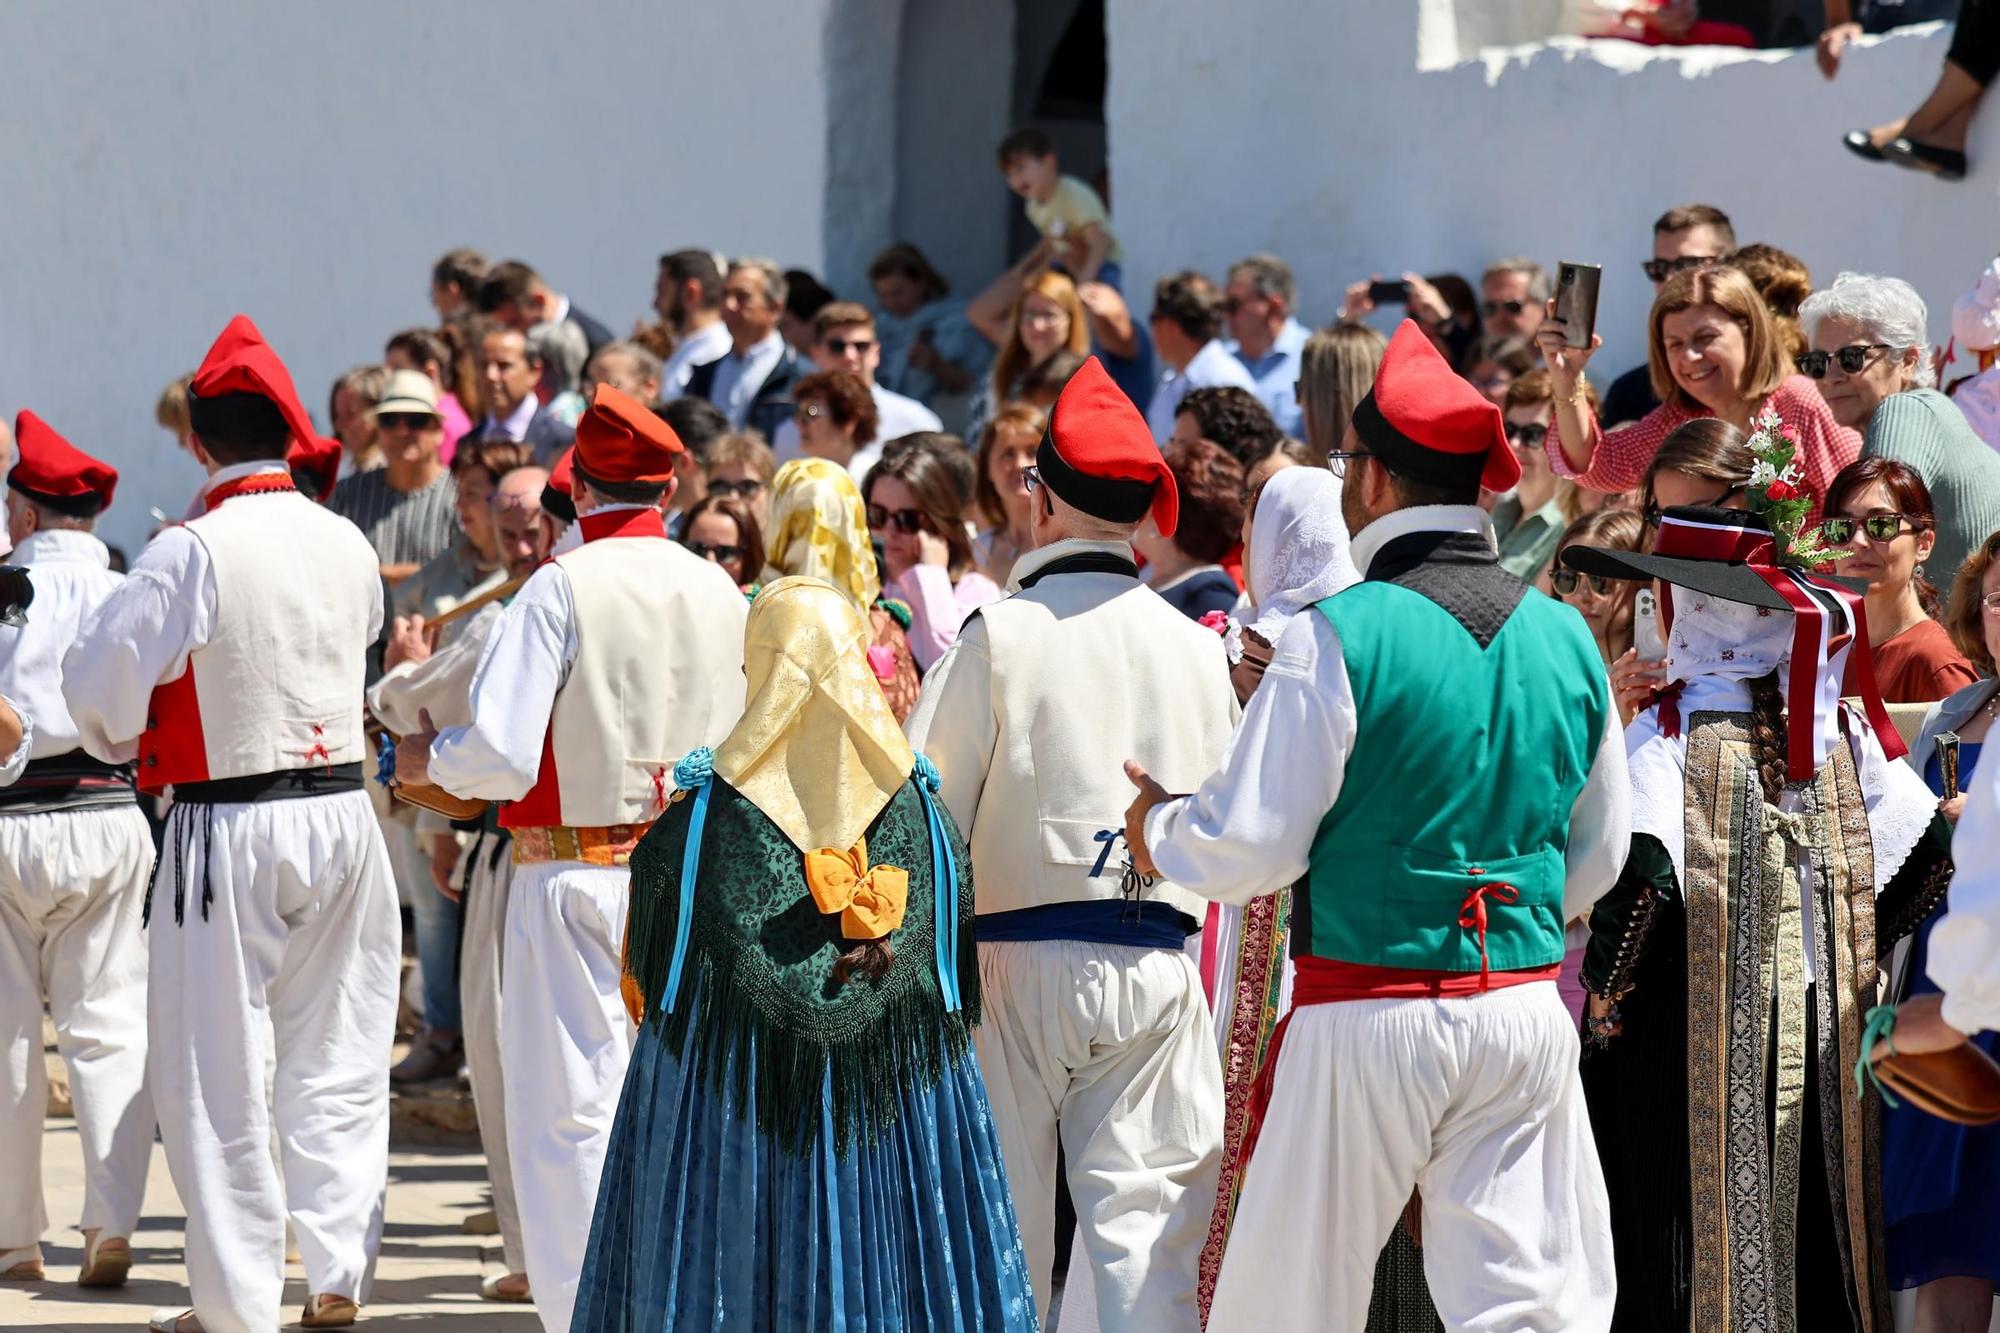 Galería: Mira aquí todas las fotos de las fiestas Anar a Maig en Santa Eulària